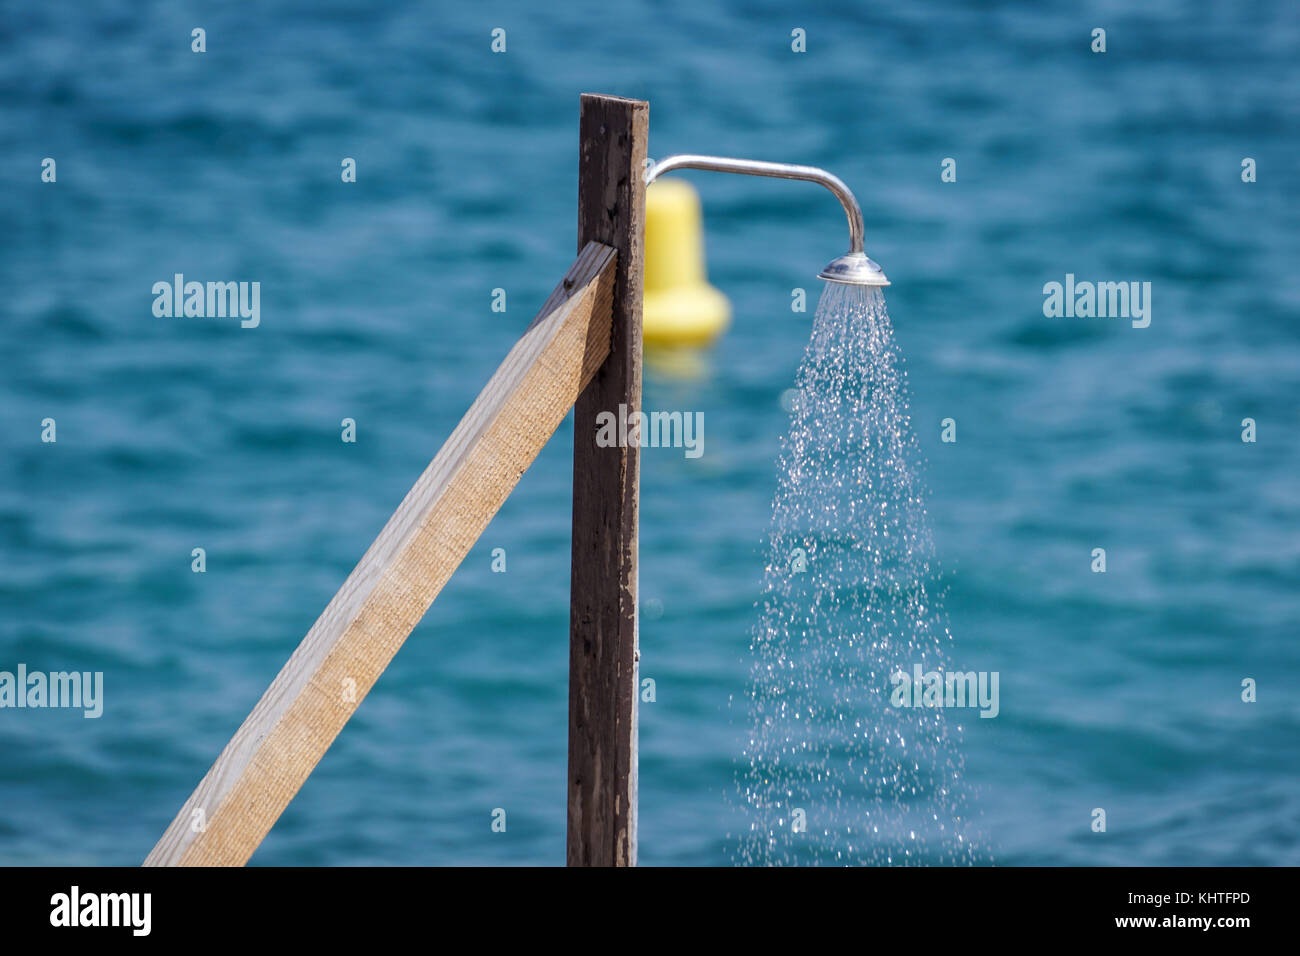 La alcachofa de la ducha con gotas de agua de mar Foto de stock